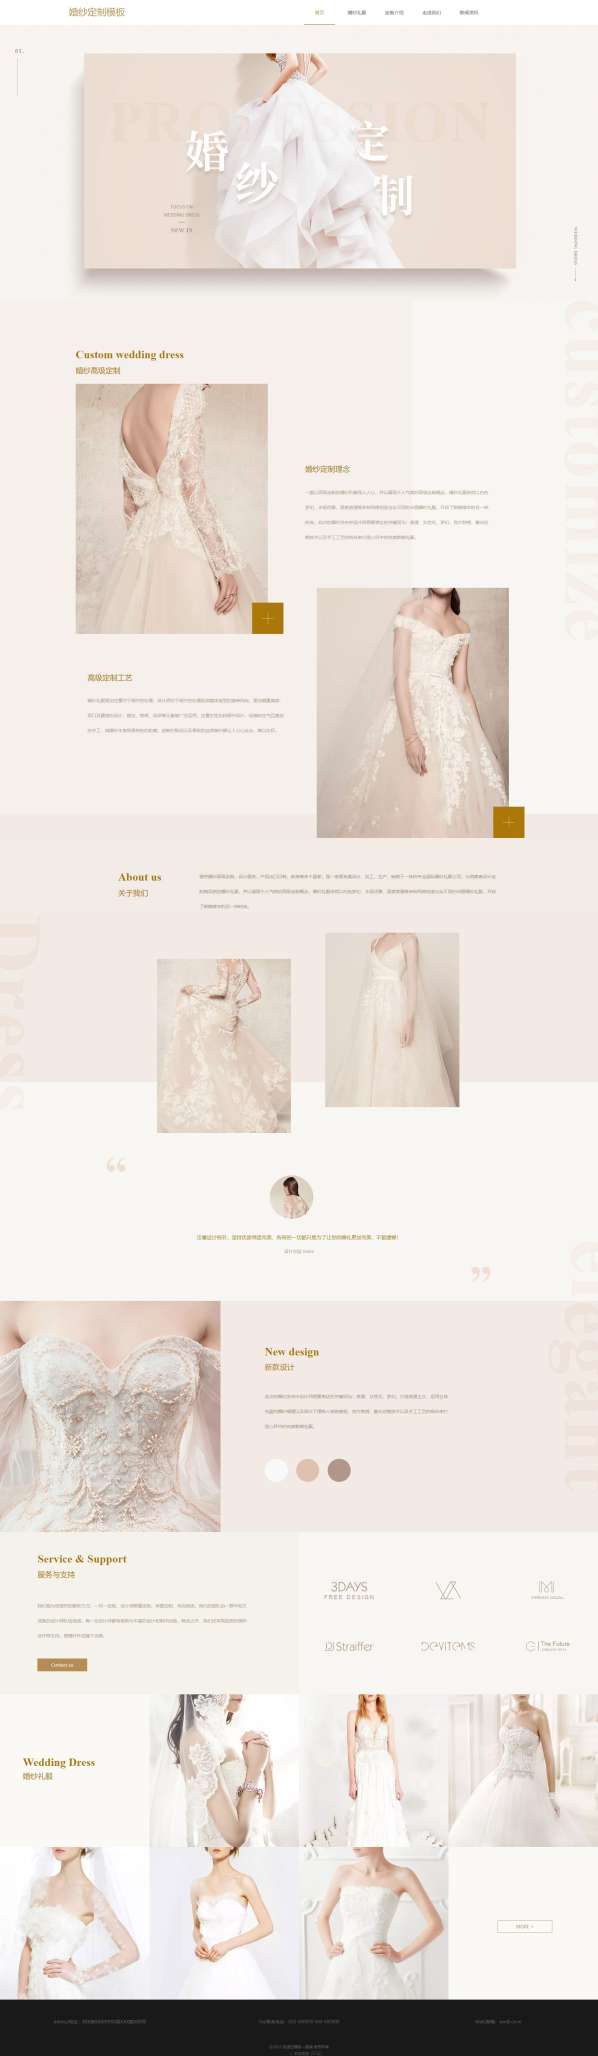 精品服装婚纱定制网站模板